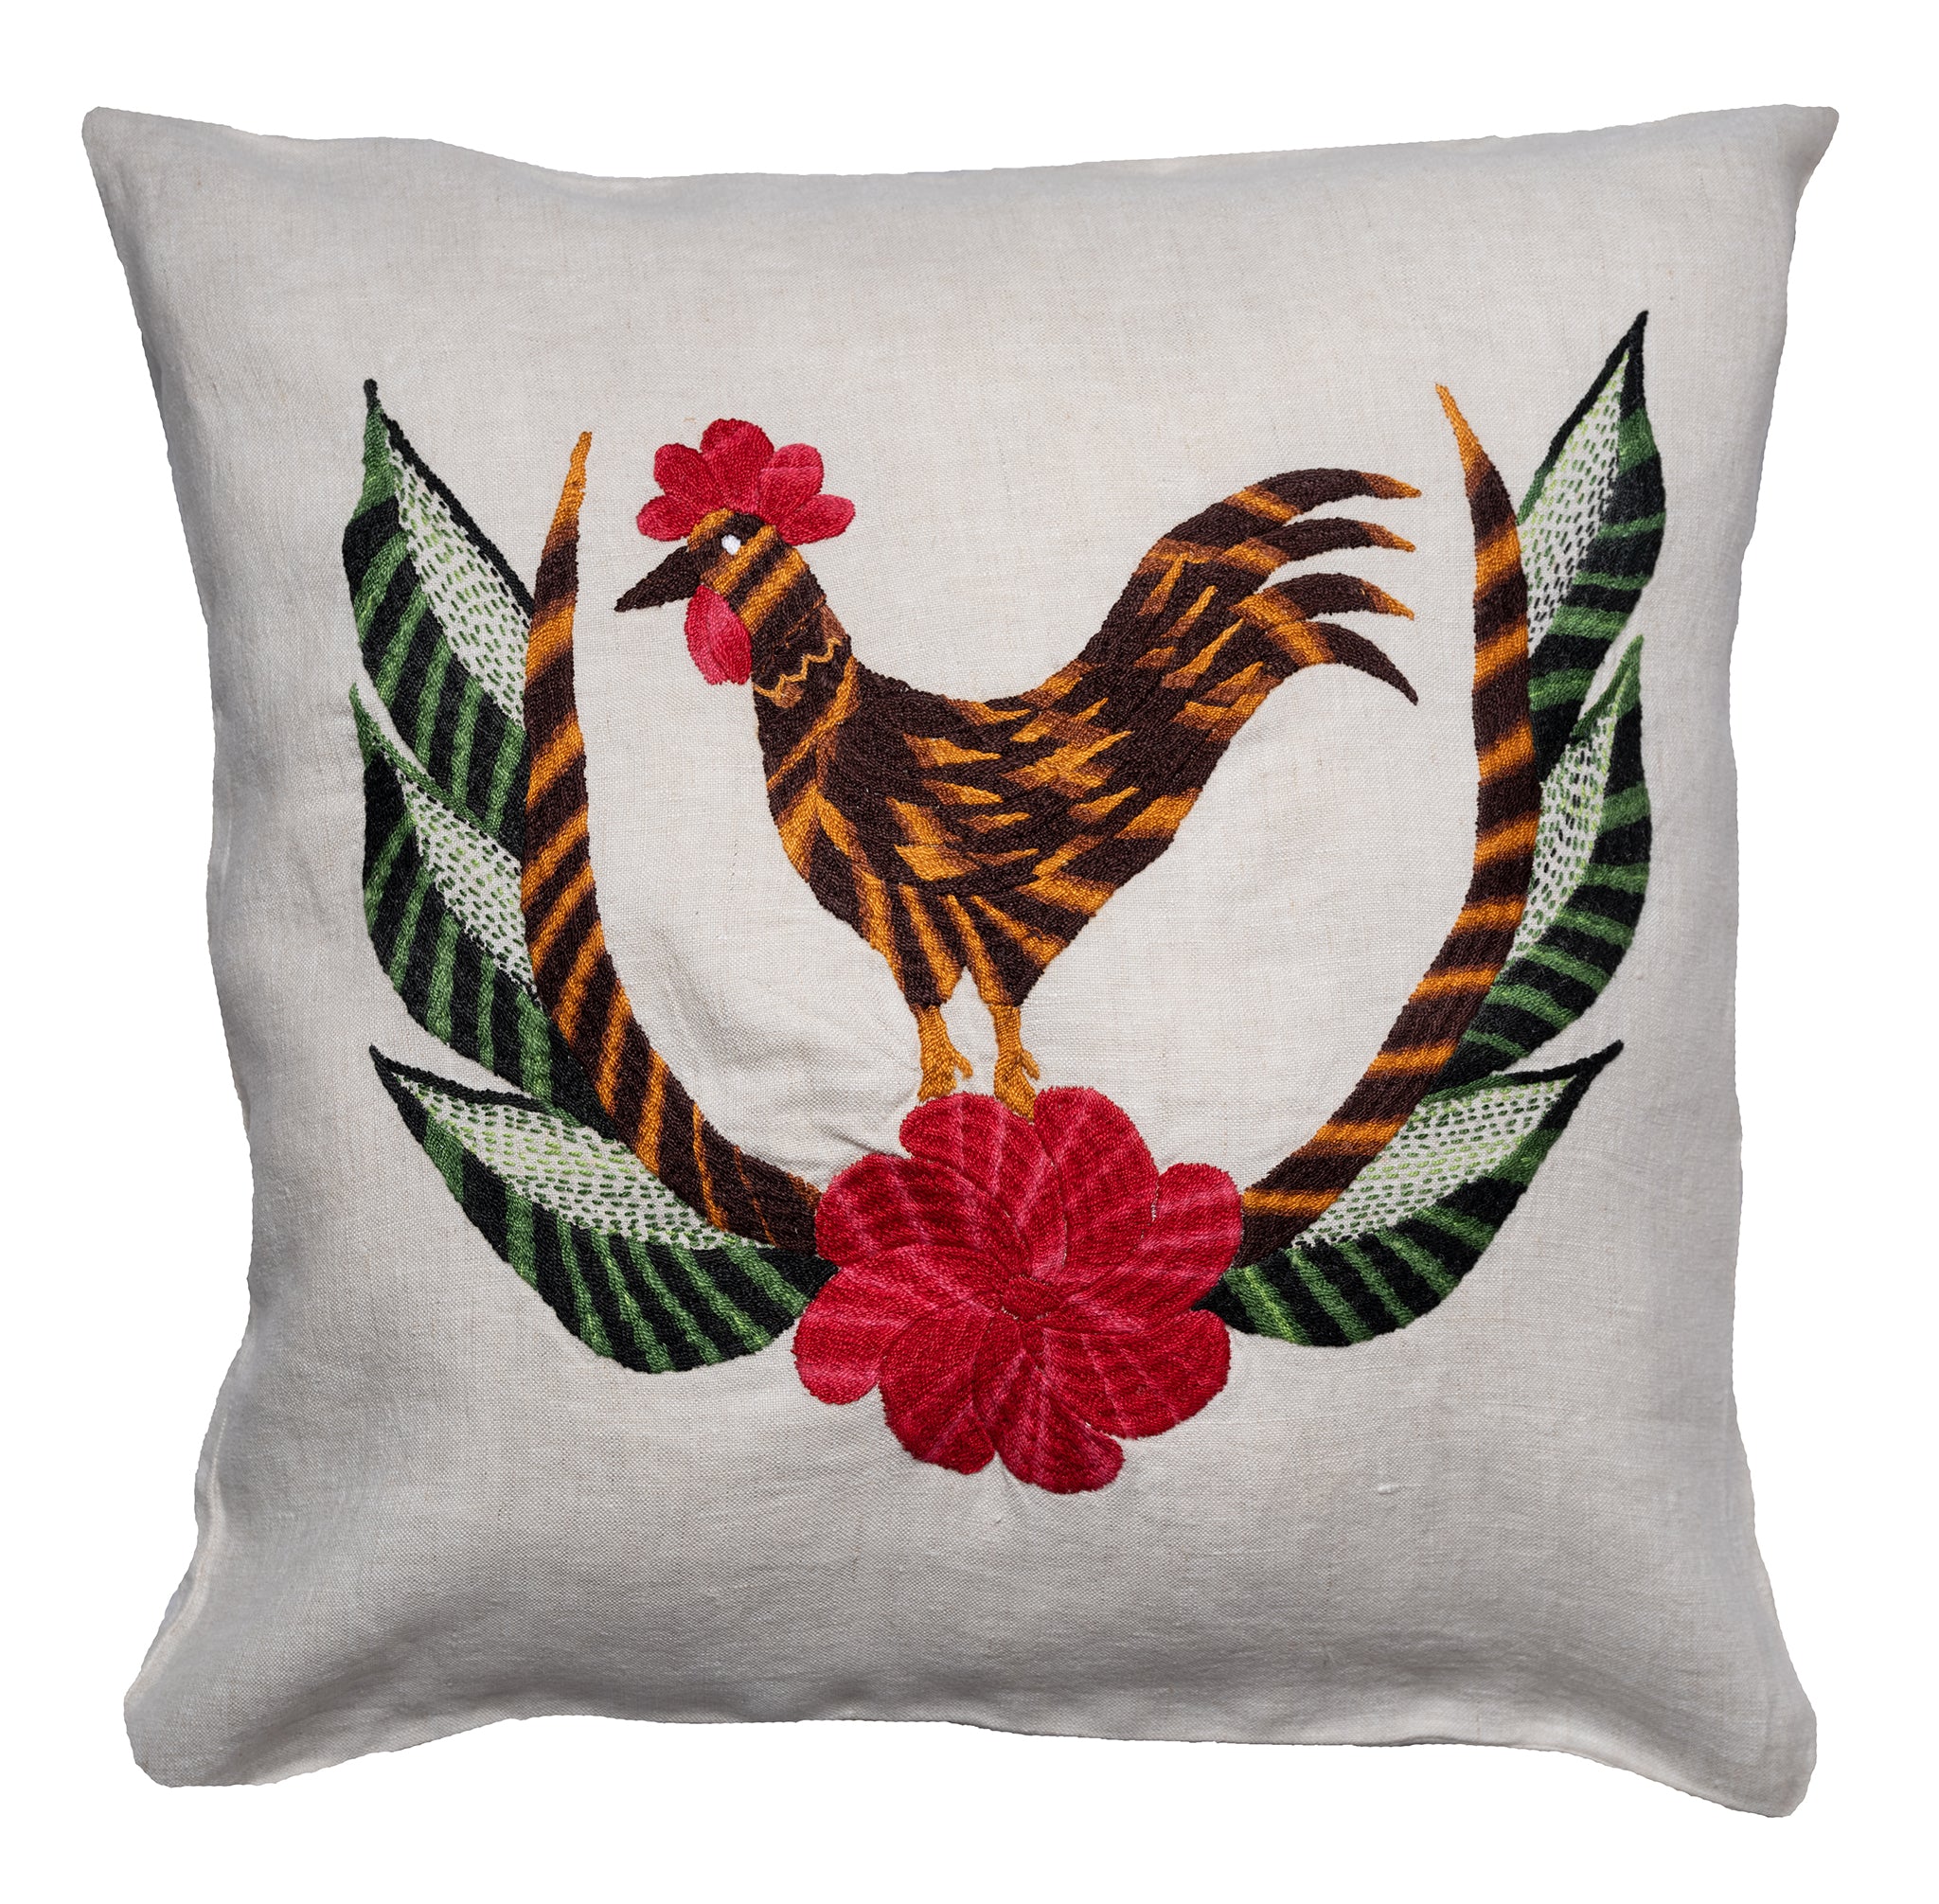 Chicken pillow on natural linen